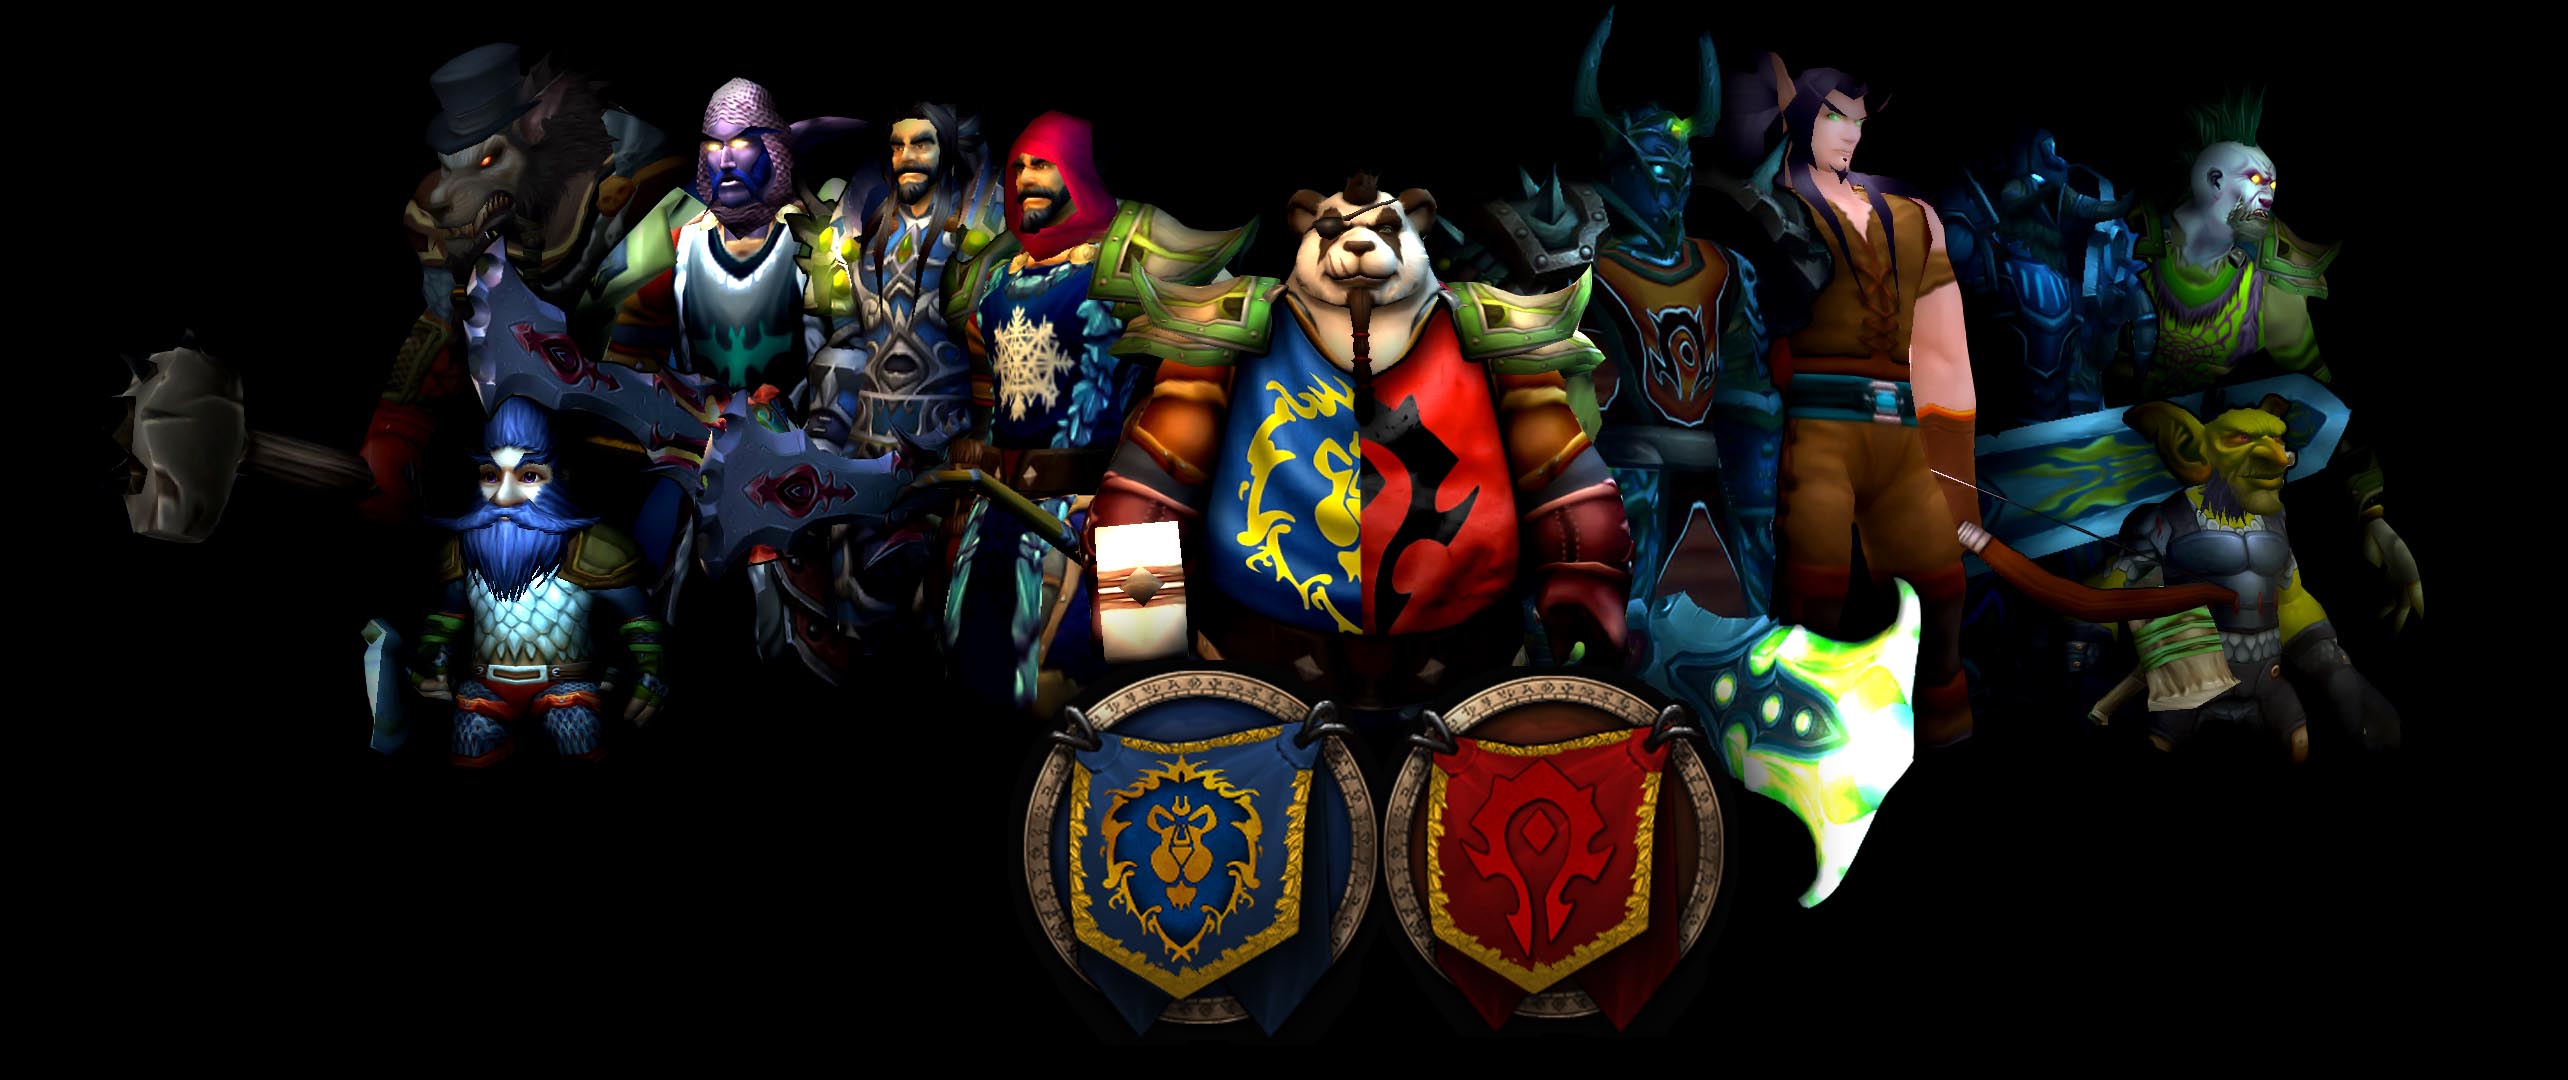 World of Warcraft Horde vs Alliance